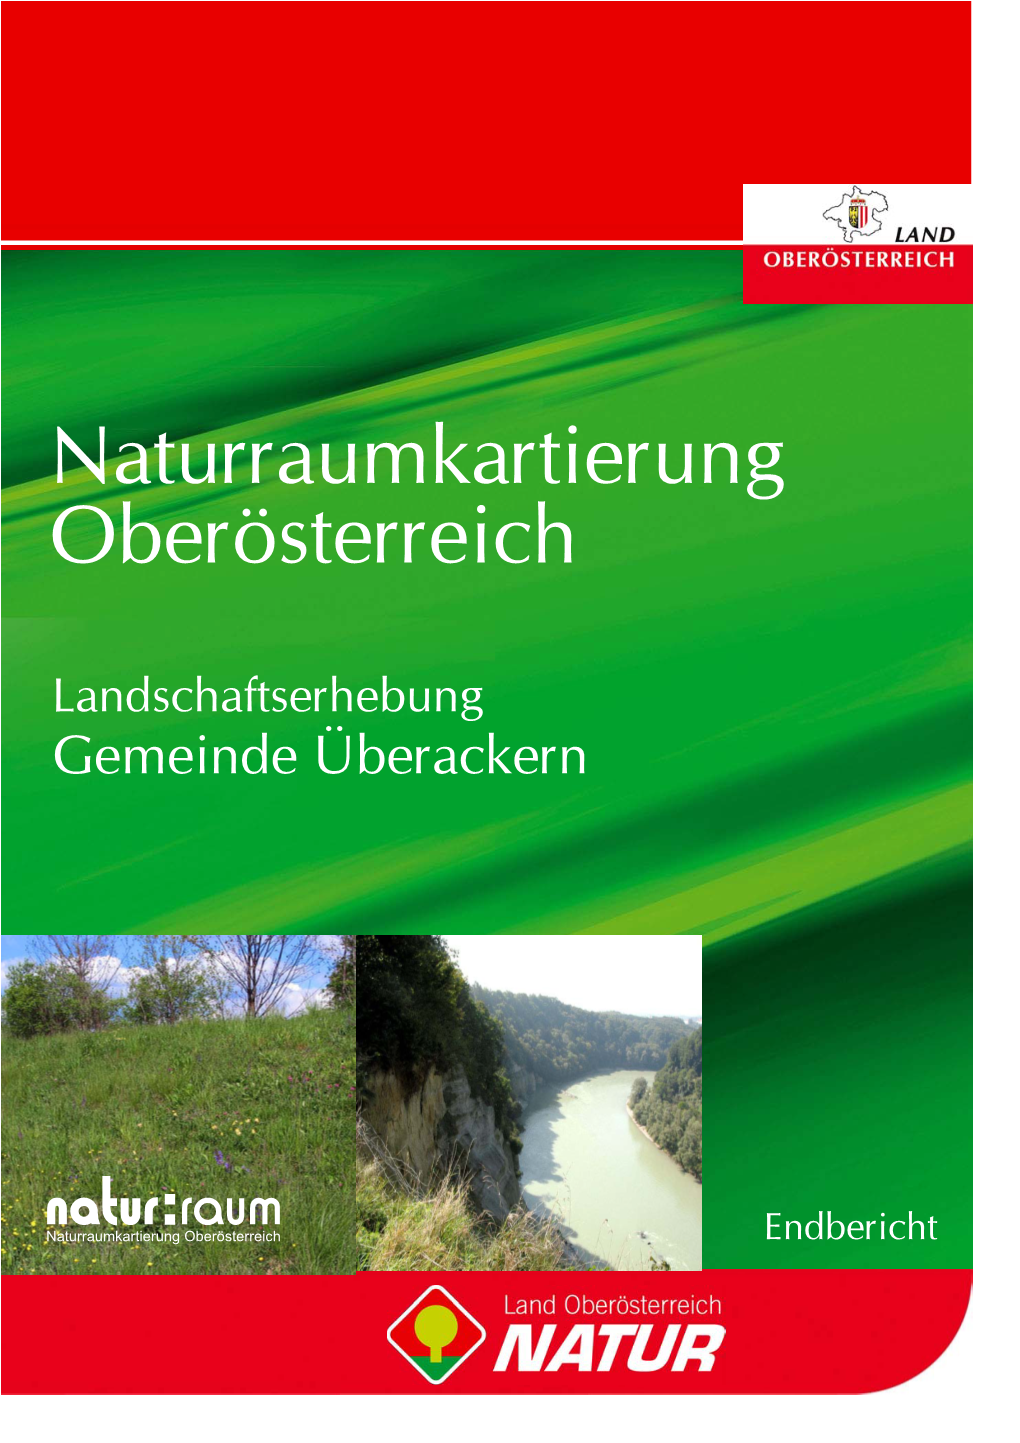 Naturraumkartierung Oberösterreich